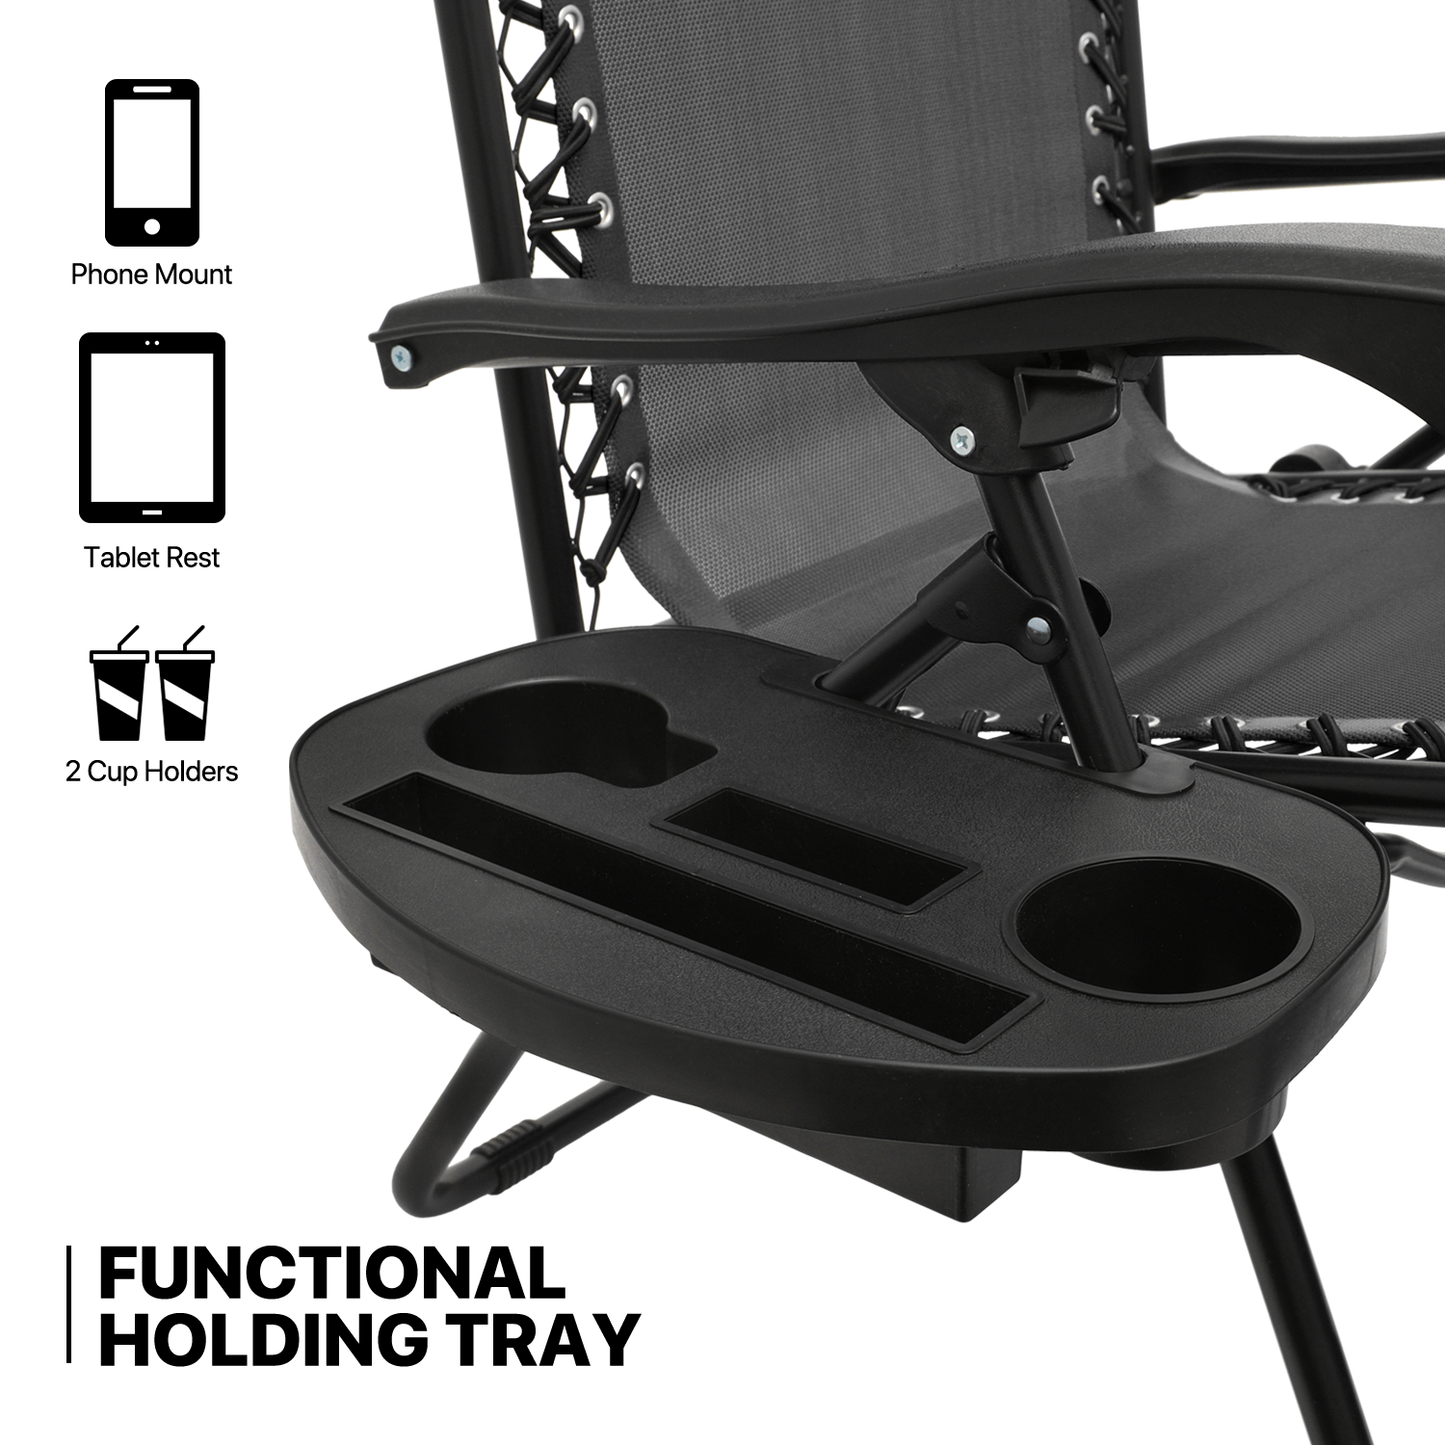 Set of 2 Zero Gravity Chair 20"x26"x43.5" - with Sunshade